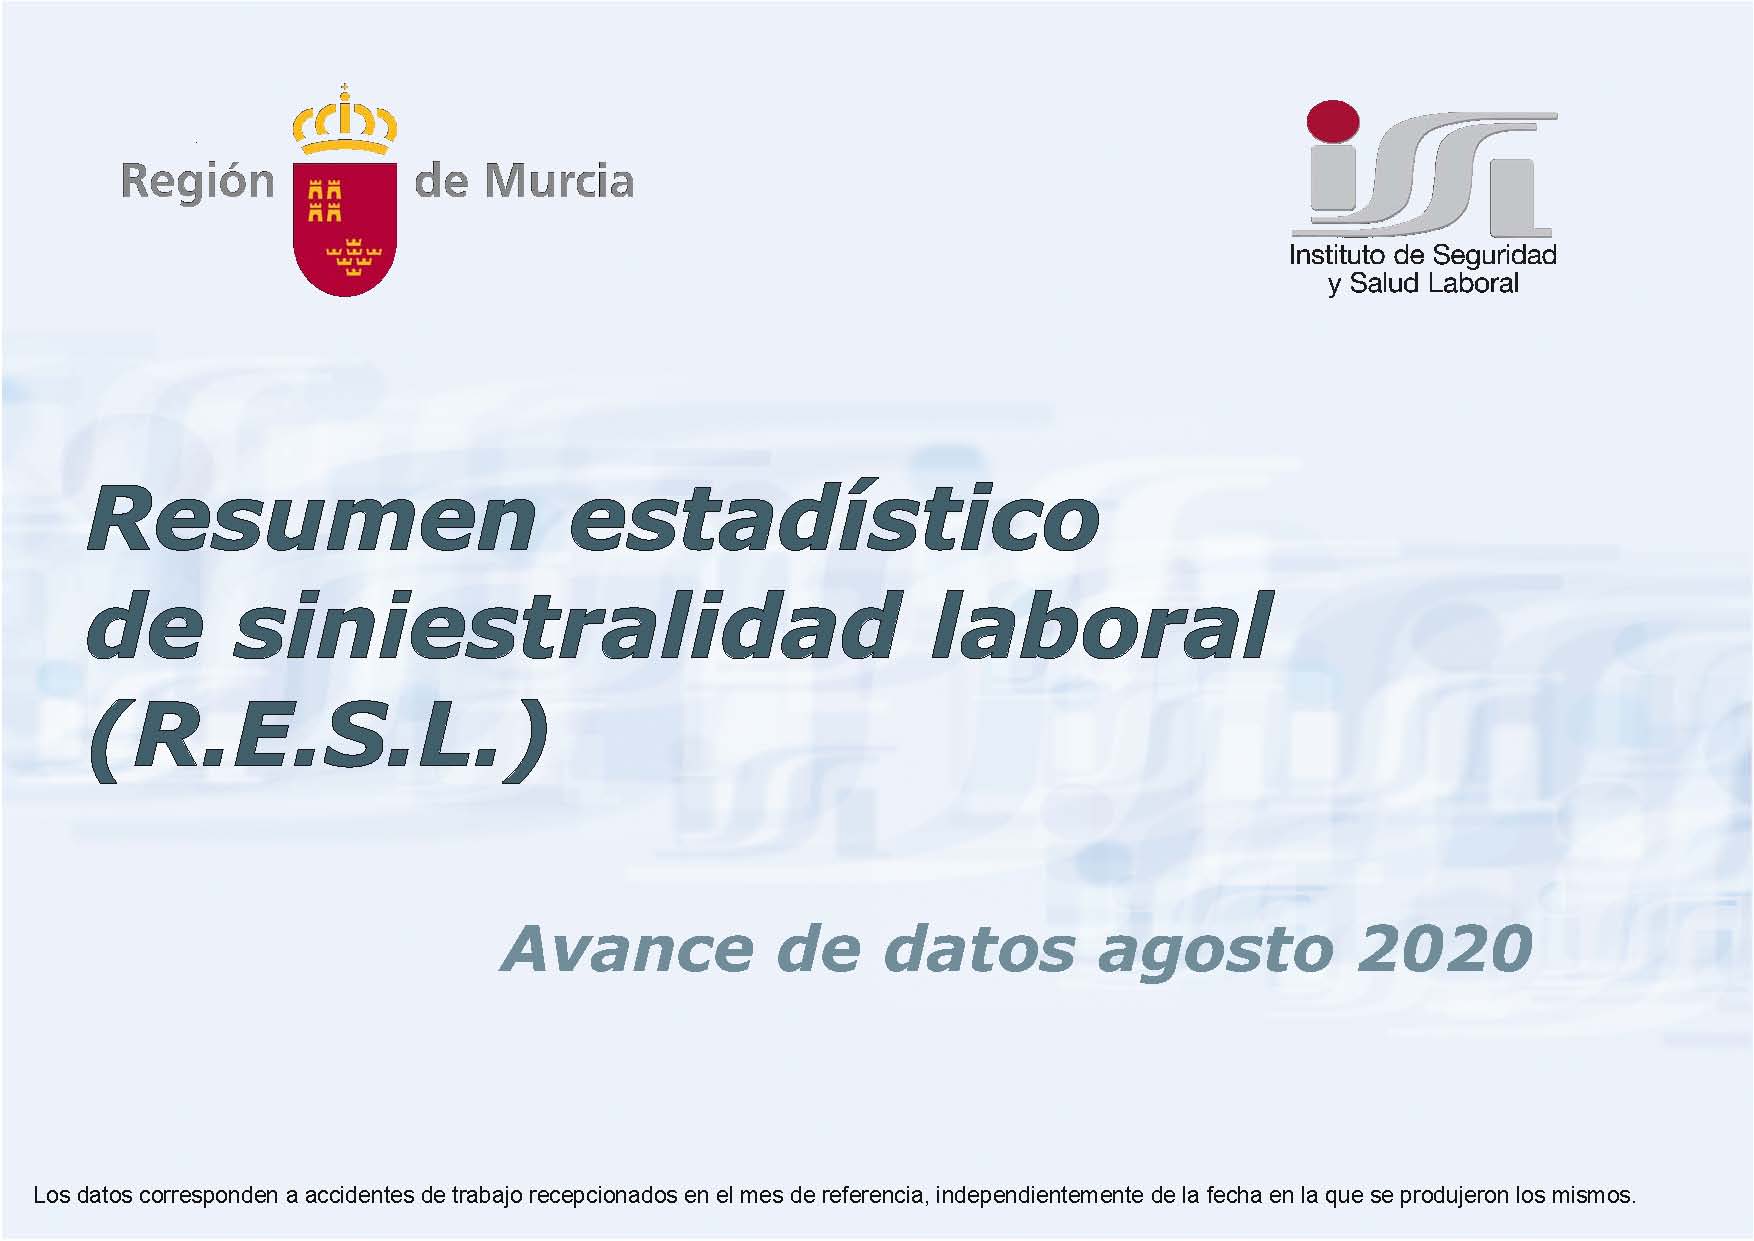 RESL (Resumen estadístico de siniestralidad laboral) agosto 2020